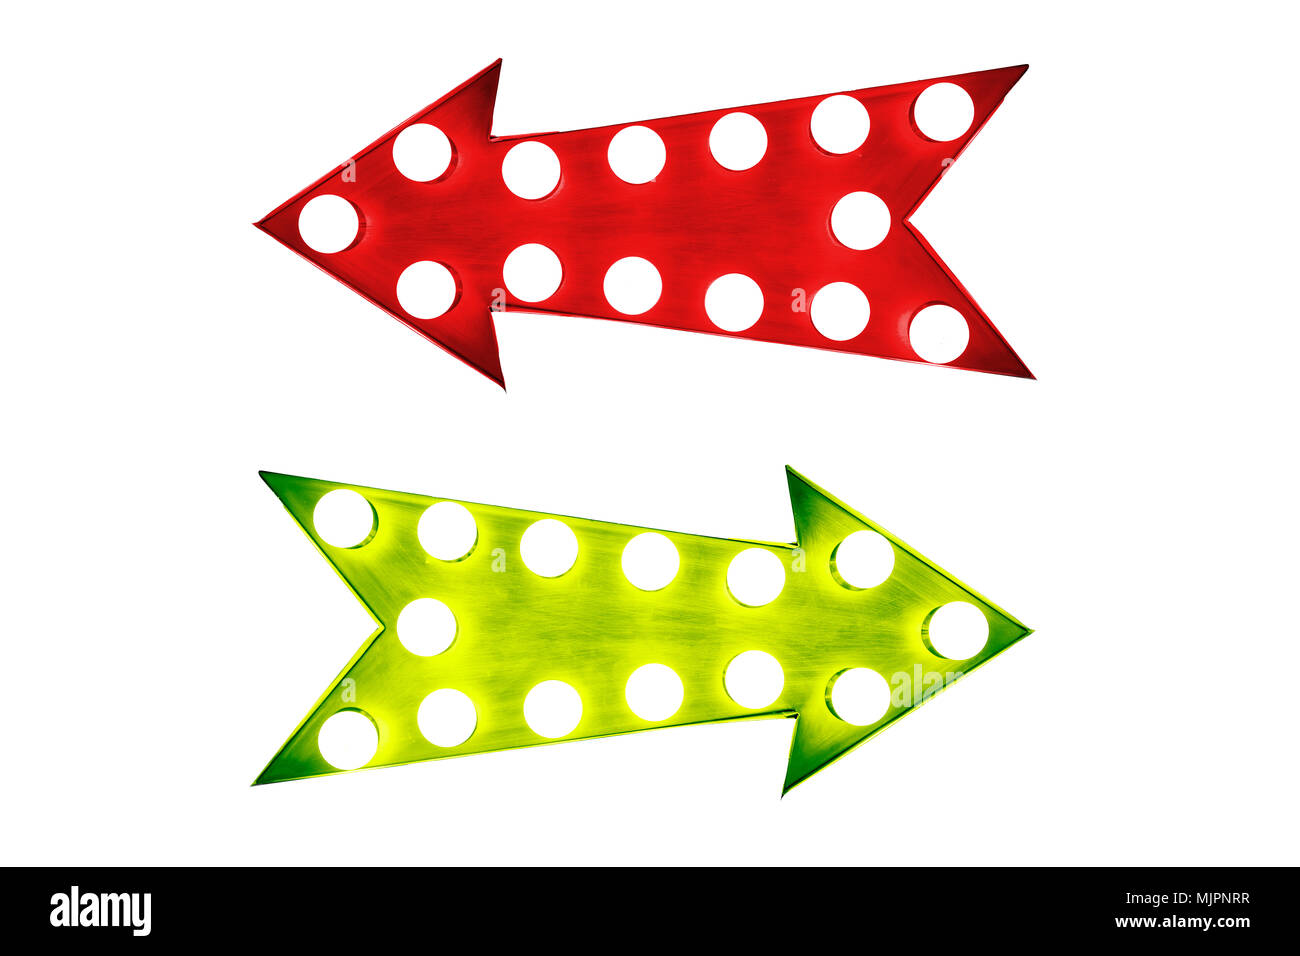 Vor- und Nachteile: linke rote und grüne rechts Vintage Retro Pfeile mit Glühlampen beleuchtet. Konzept Bild für die Vor- und Nachteile, für und ag Stockfoto